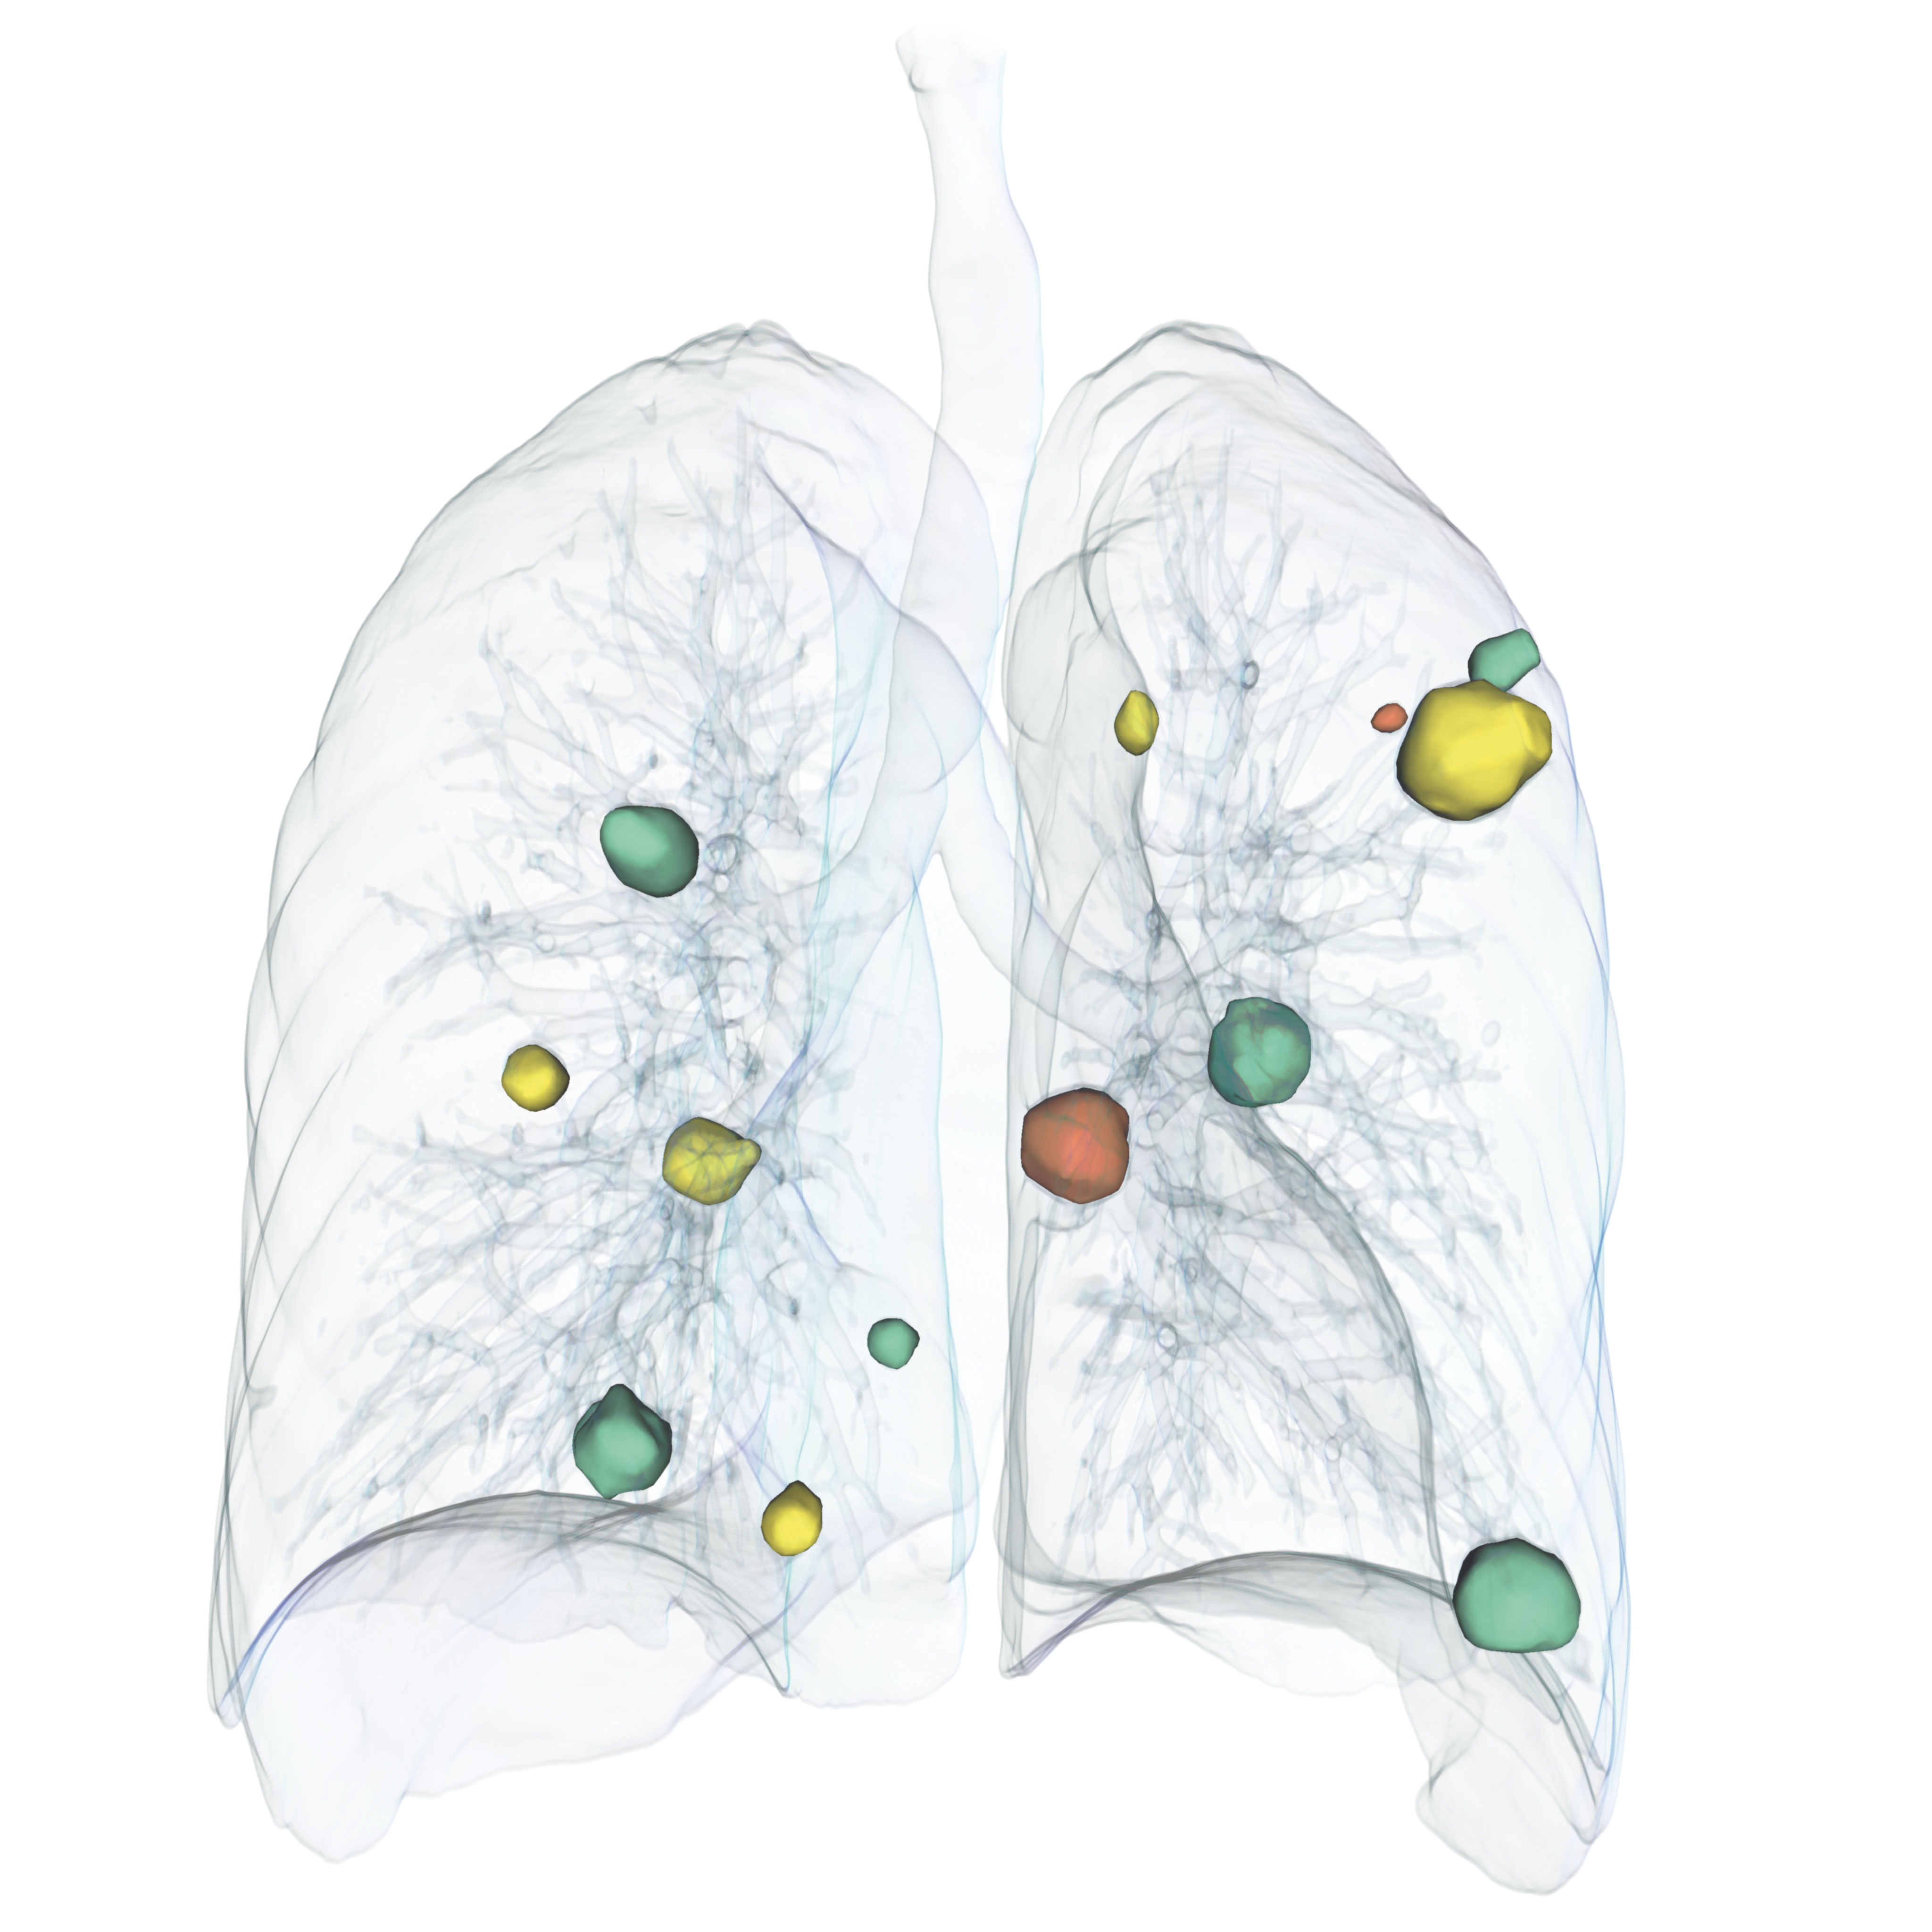 Volumenrendering einer Lunge, das die Volumenentwicklung von Tumoren darstellt.